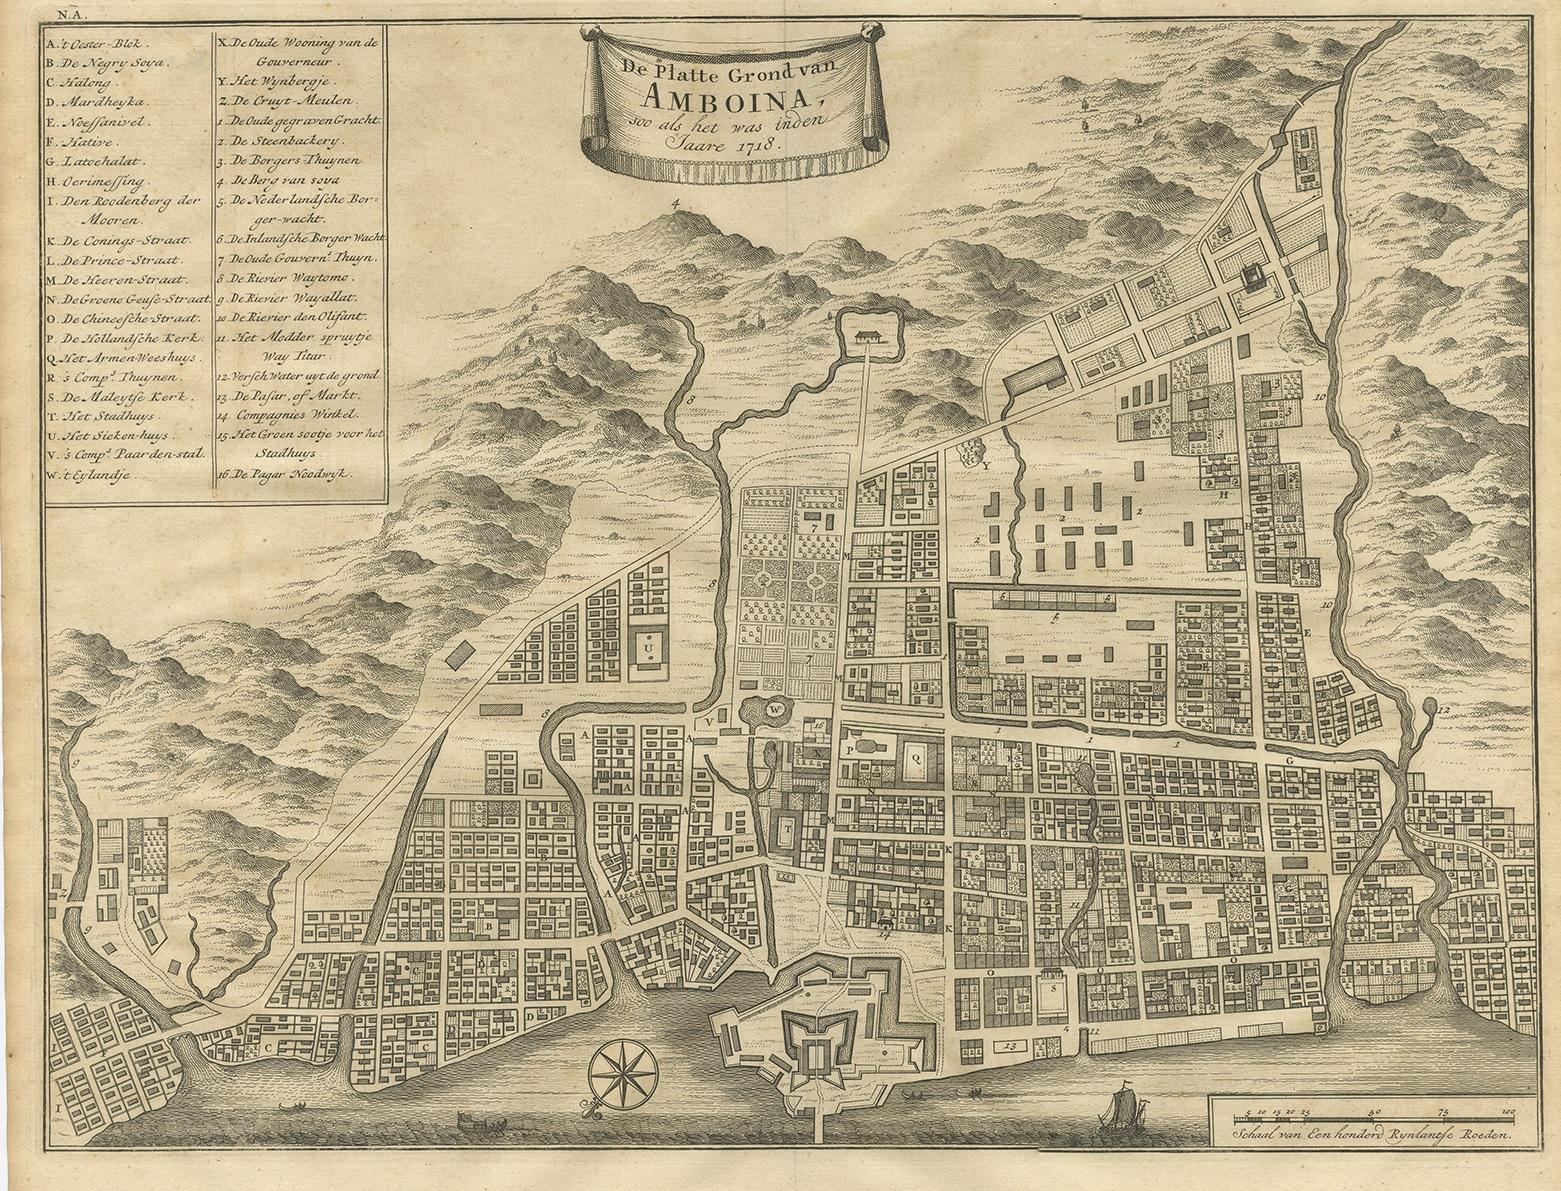 Antique map titled 'De Platte Grond van Amboina zoo als het was in den Jaare, 1718'. Antique map depicting the City of Ambon, Indonesia. This print originates from 'Oud en Nieuw Oost-Indiën' by F. Valentijn.